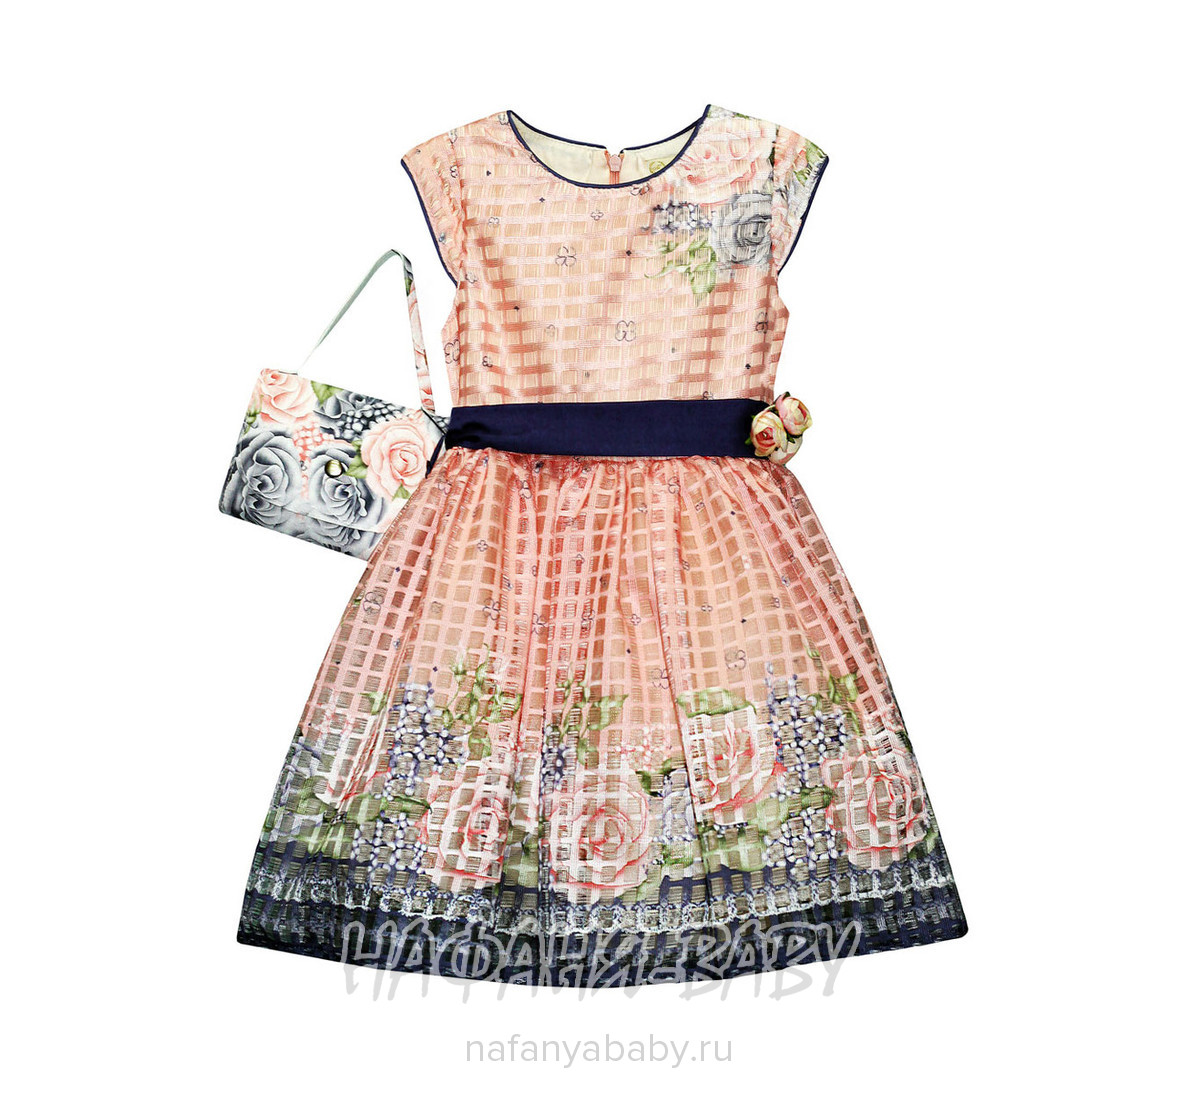 Детское платье + сумочка MOONSTAR арт: 3776, 5-9 лет, цвет персиковый, оптом Турция